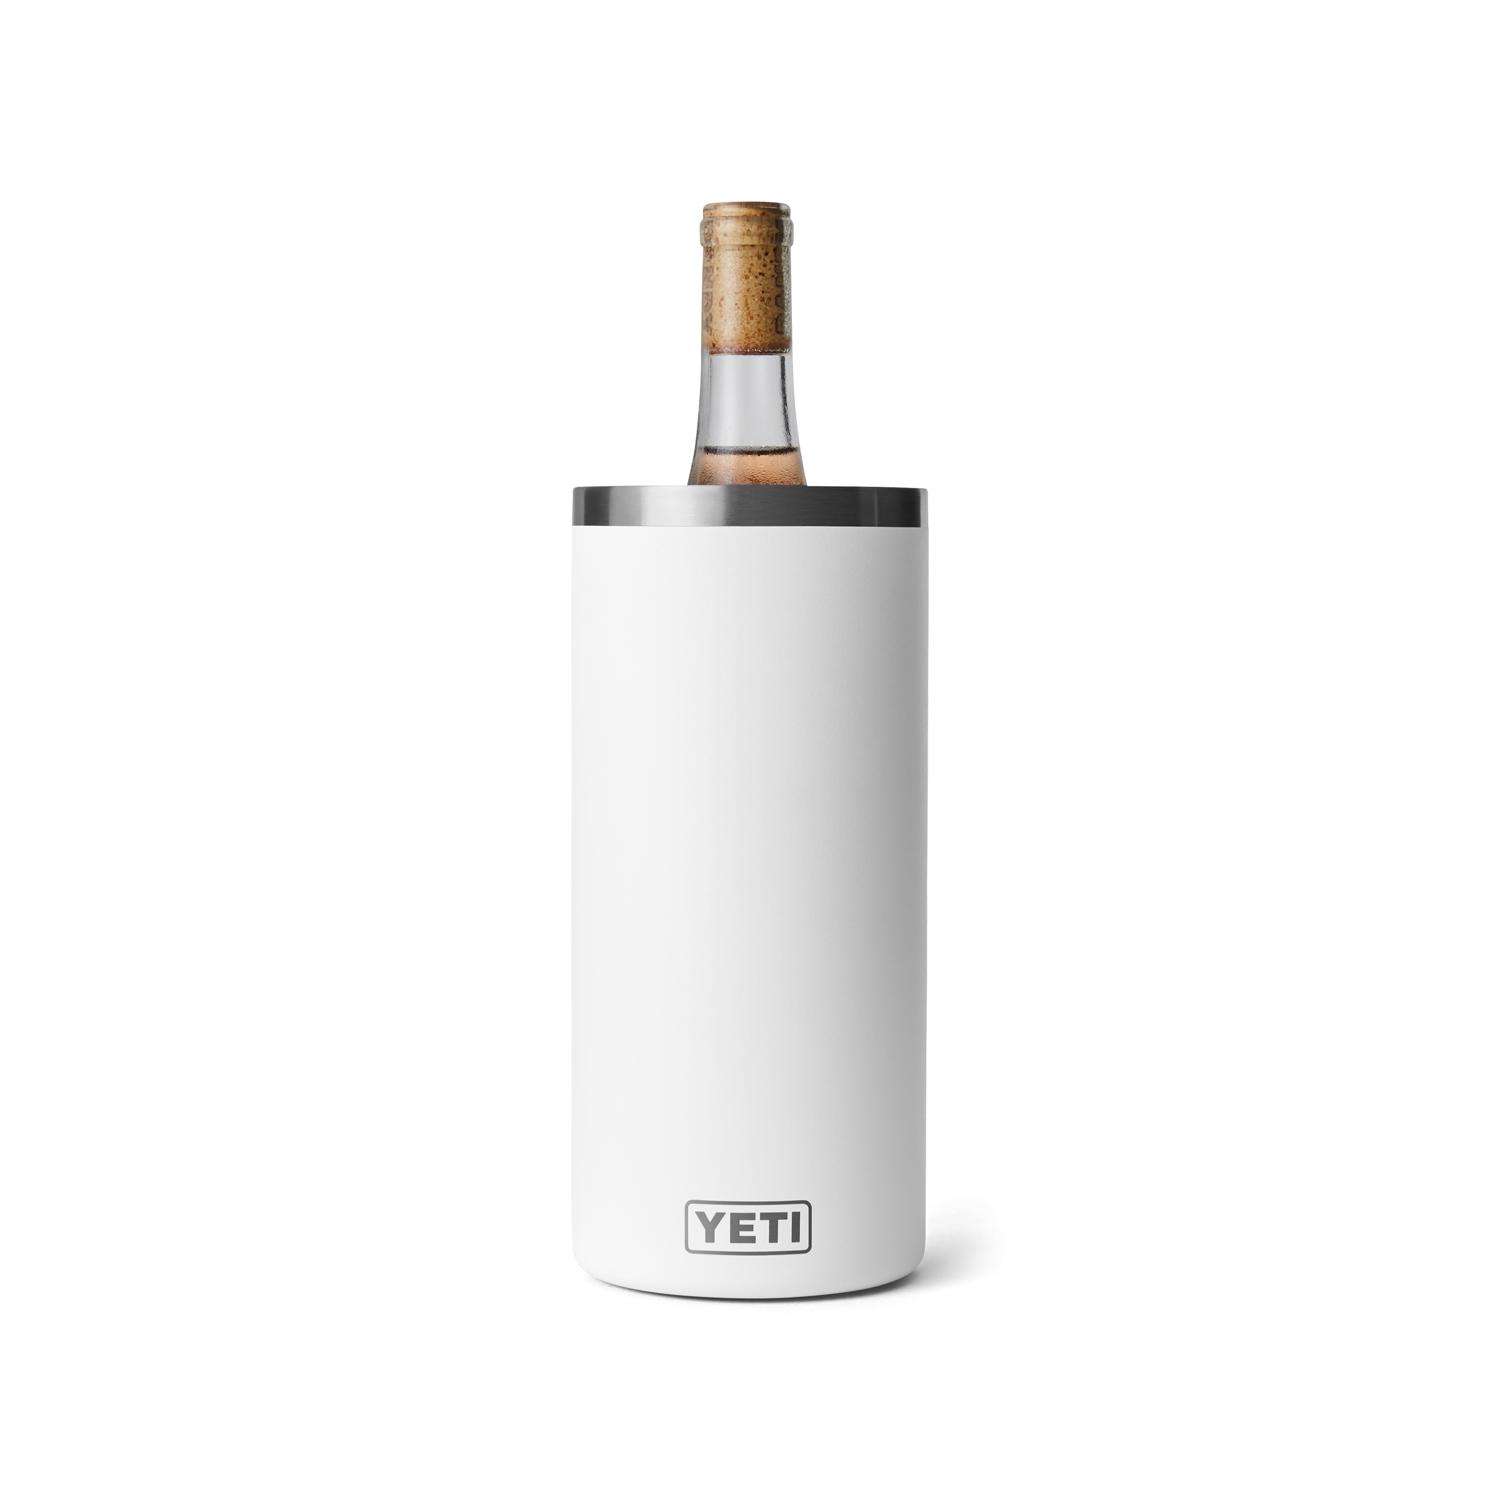 Laser Engraved Yeti Wine Tumbler - I DRINK WINE PERIODICALLY